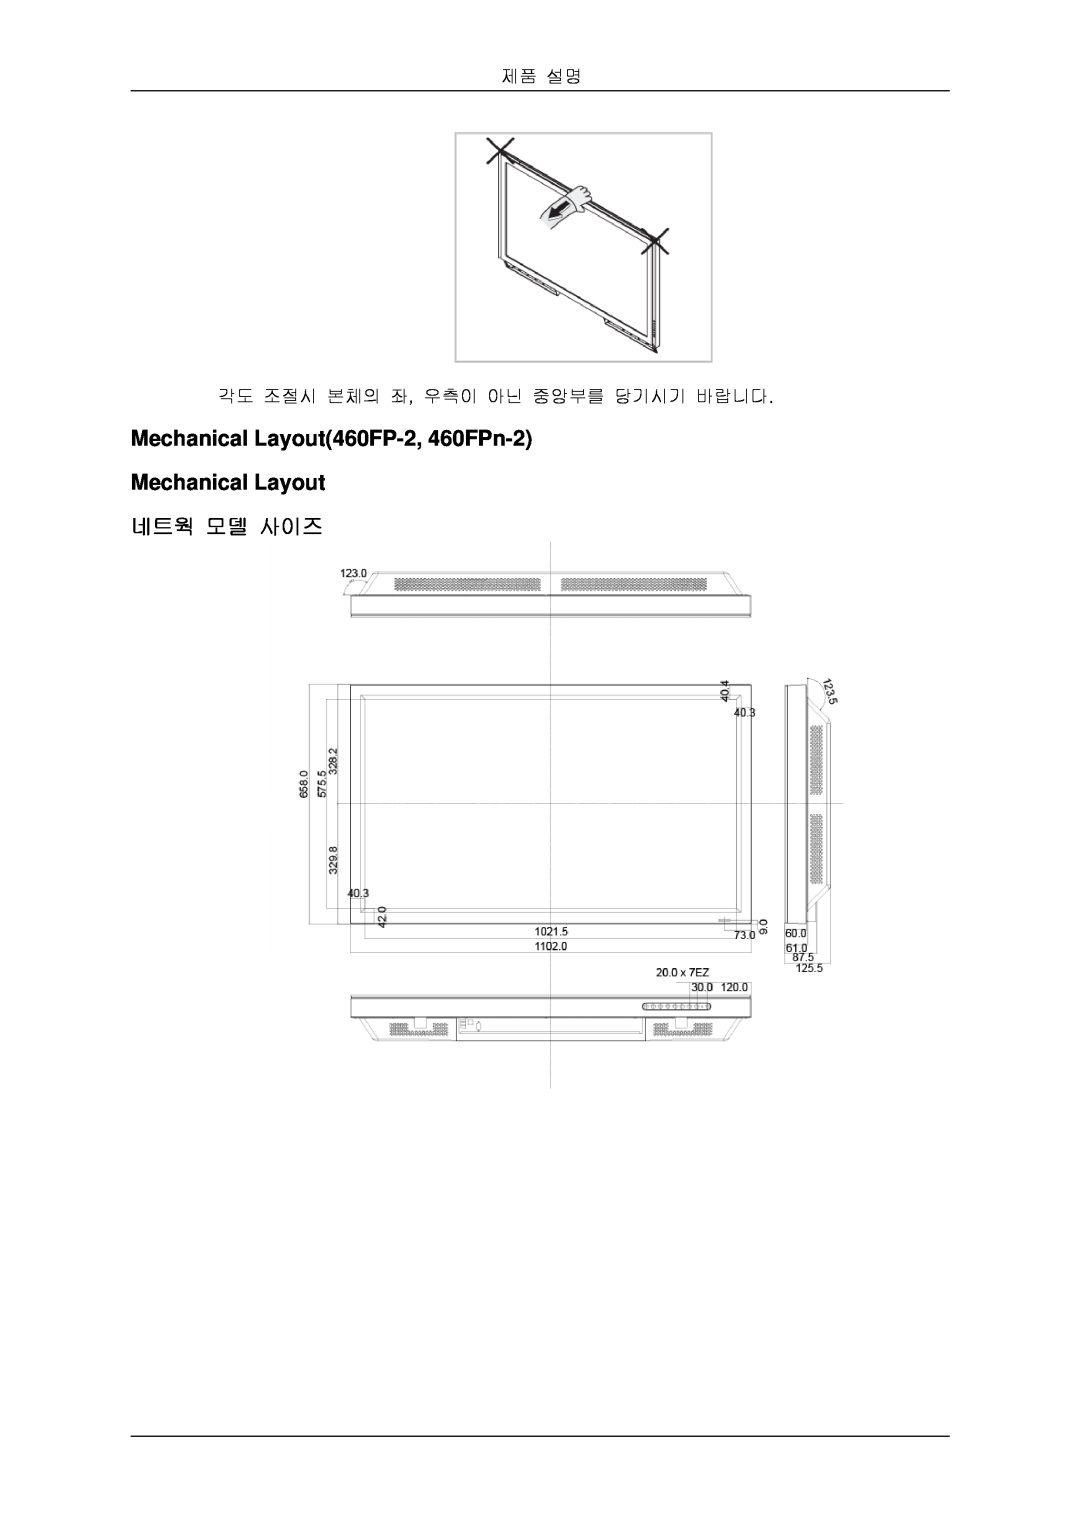 Samsung BN59-00806D-00 quick start Mechanical Layout460FP-2, 460FPn-2 Mechanical Layout 네트웍 모델 사이즈, 제품 설명 